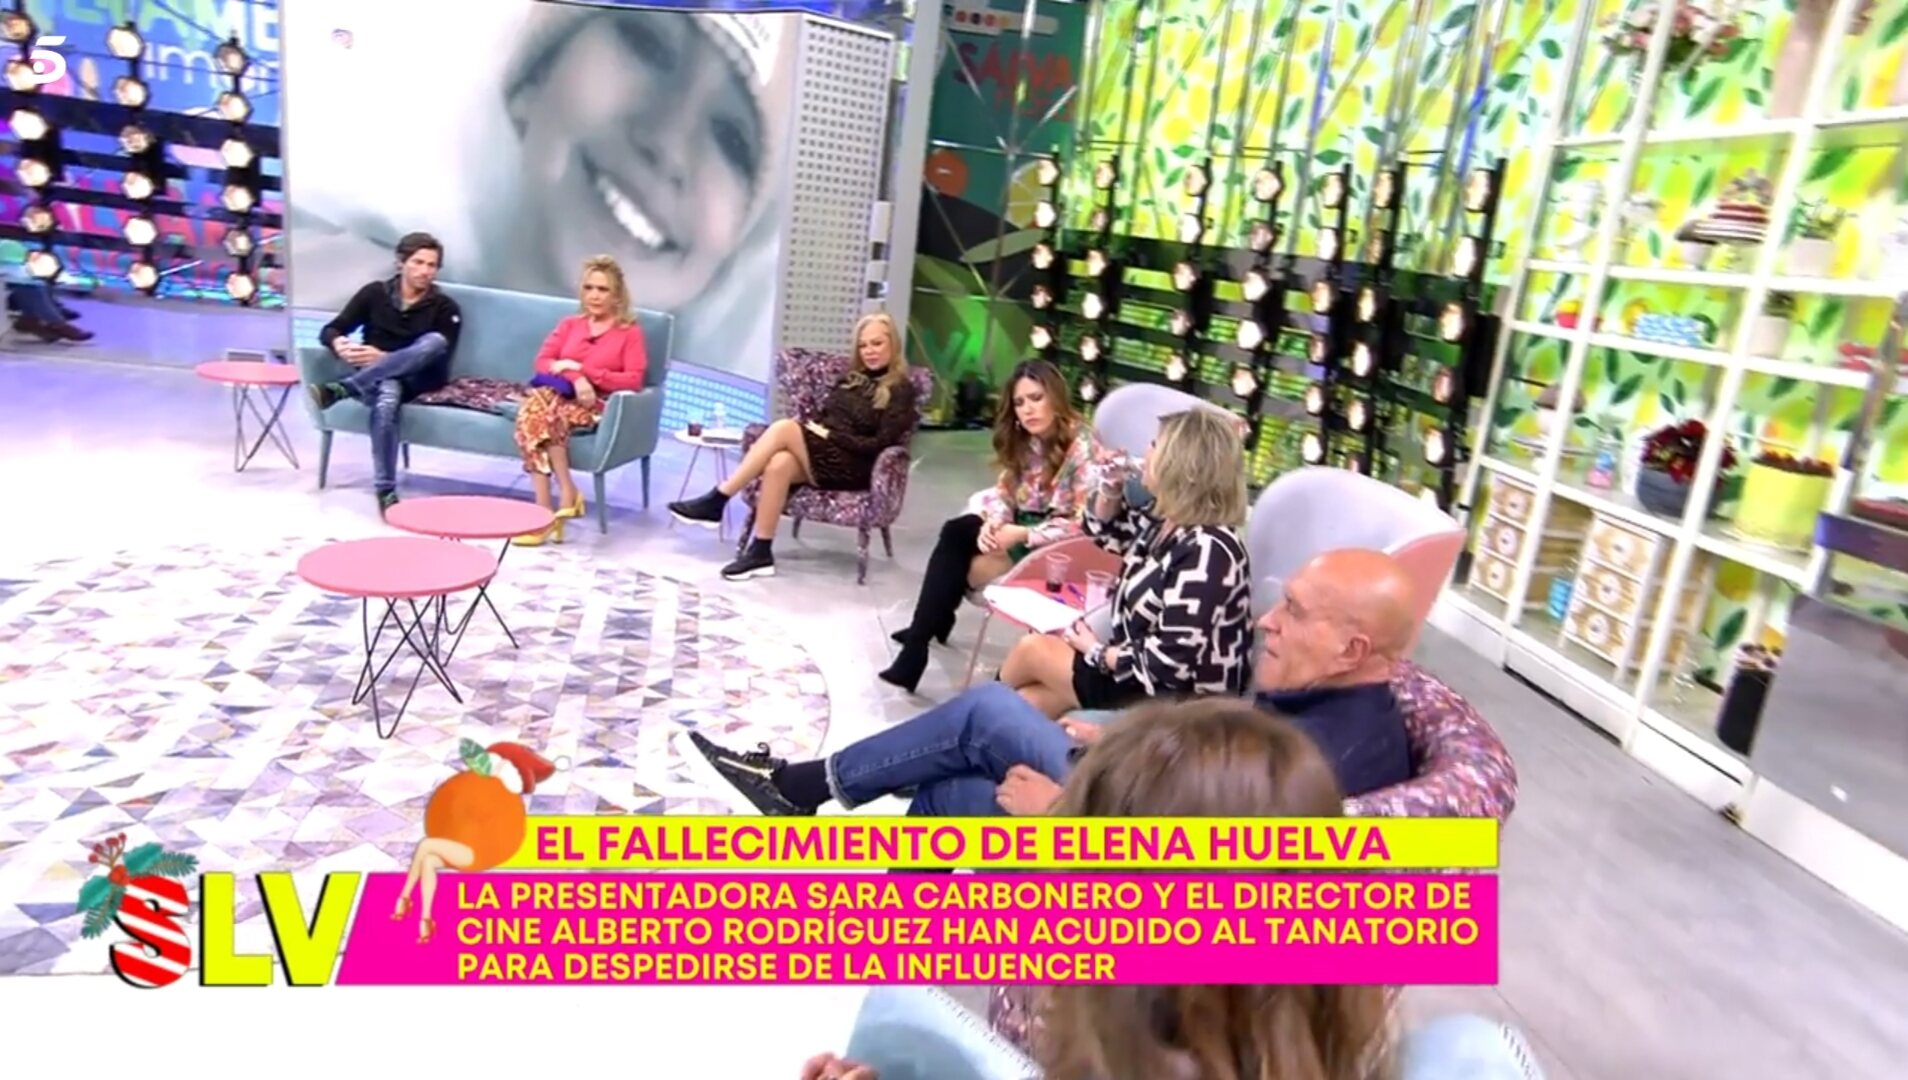 El plató de 'Sálvame' conmocionado ante la noticia / Foto: Telecinco.es